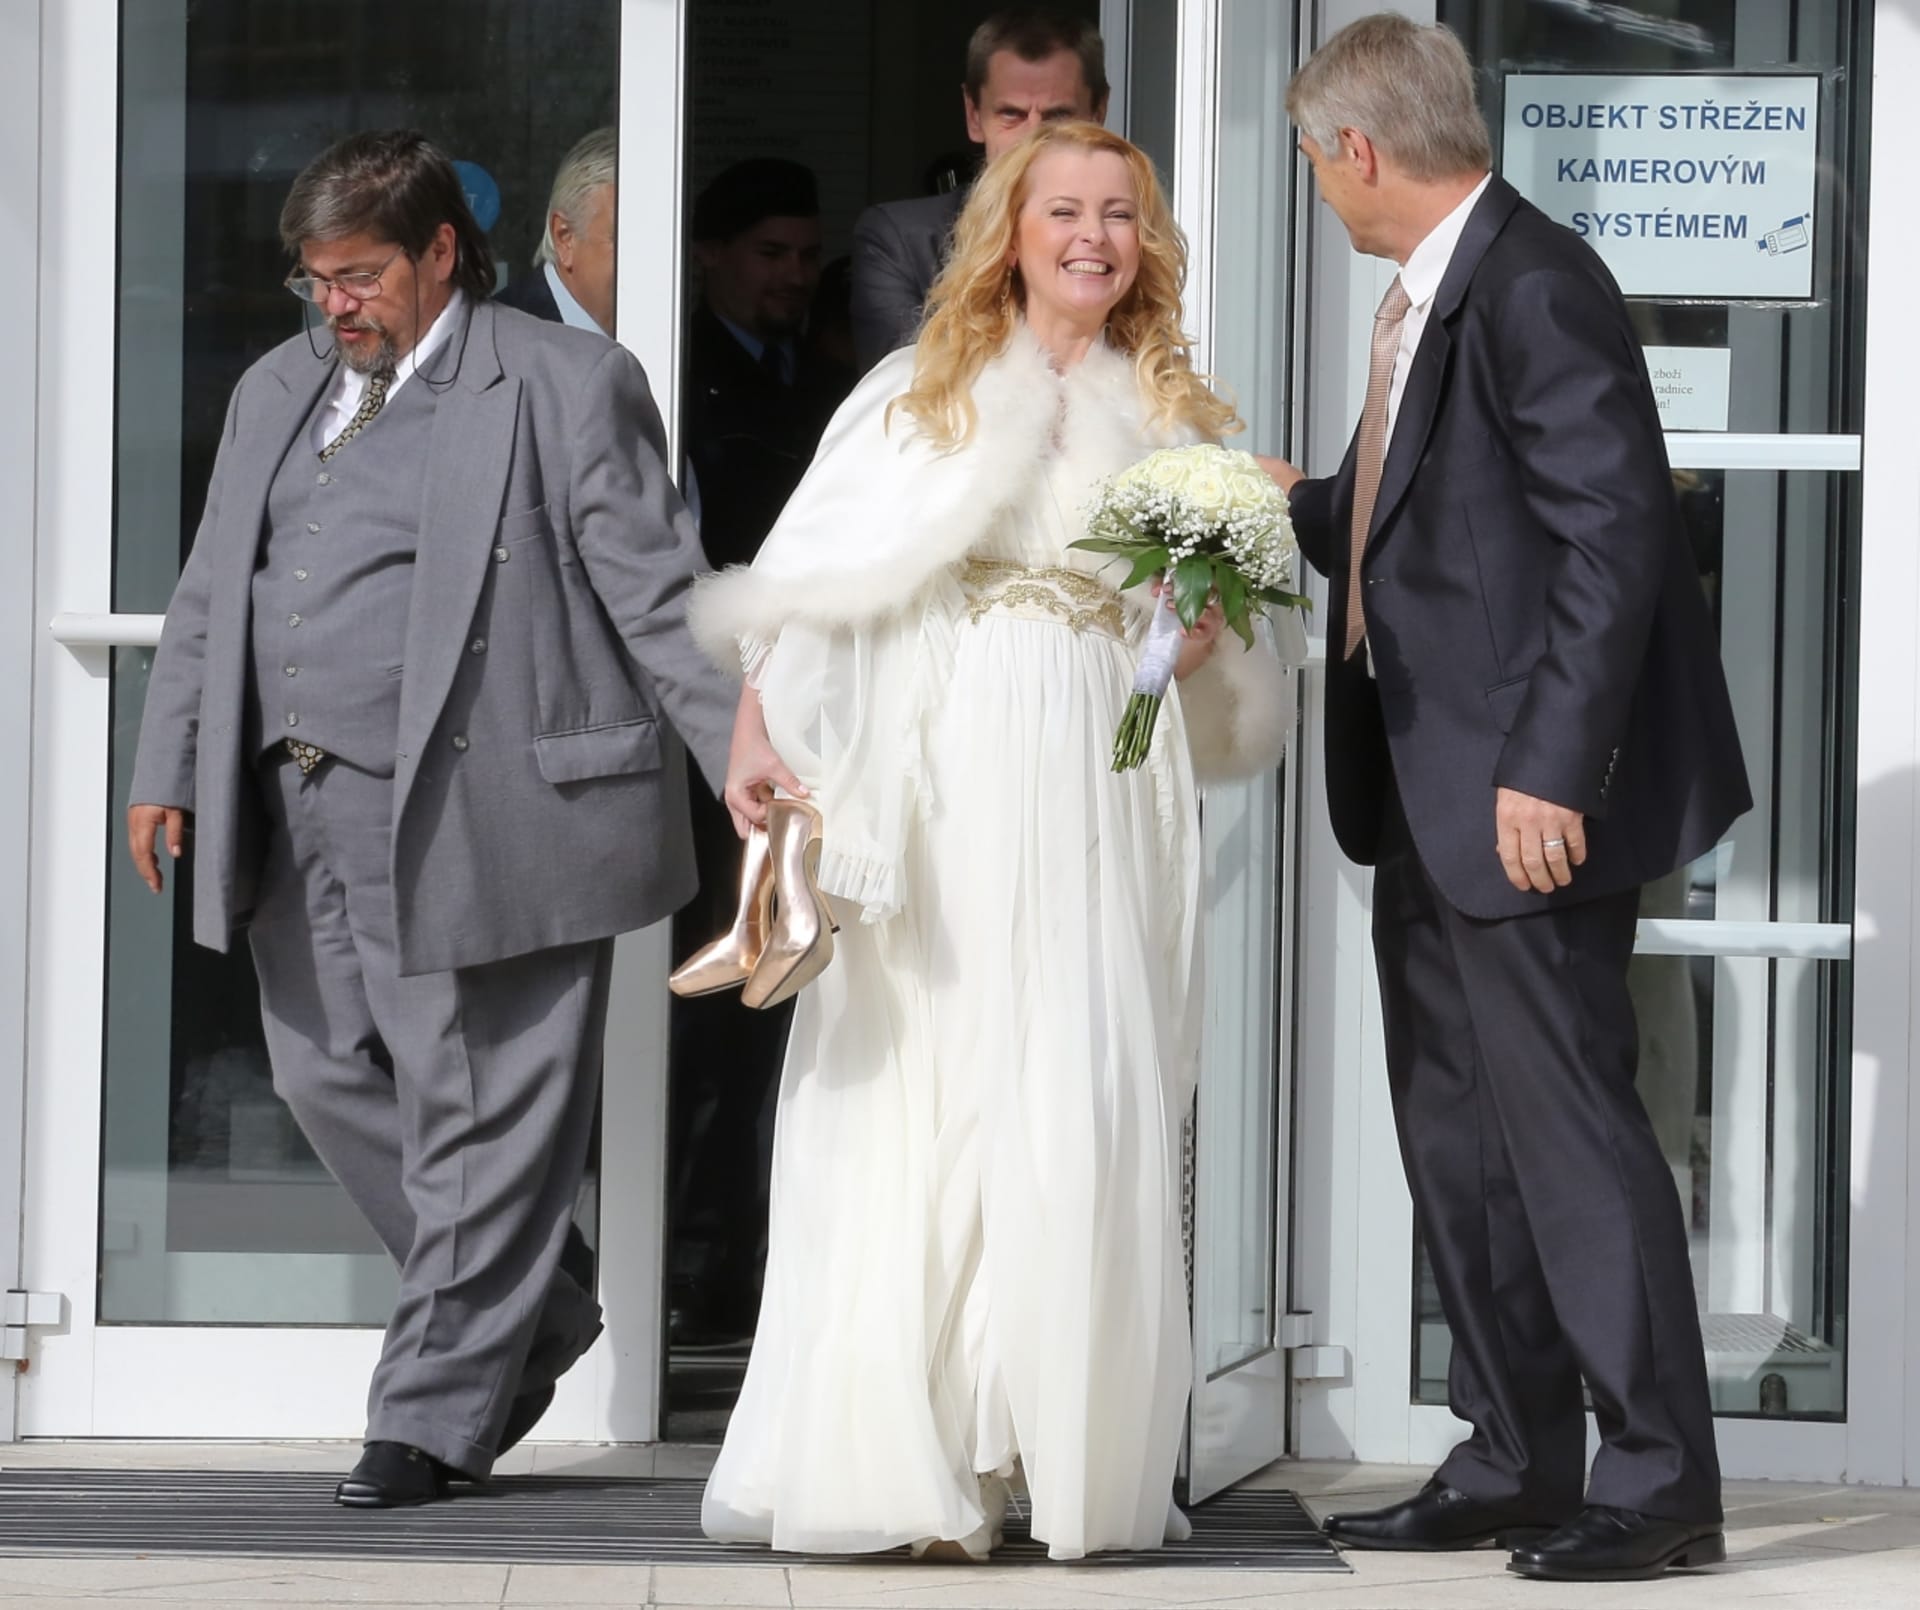 Iveta Bartošová: svatba dopadla dobře